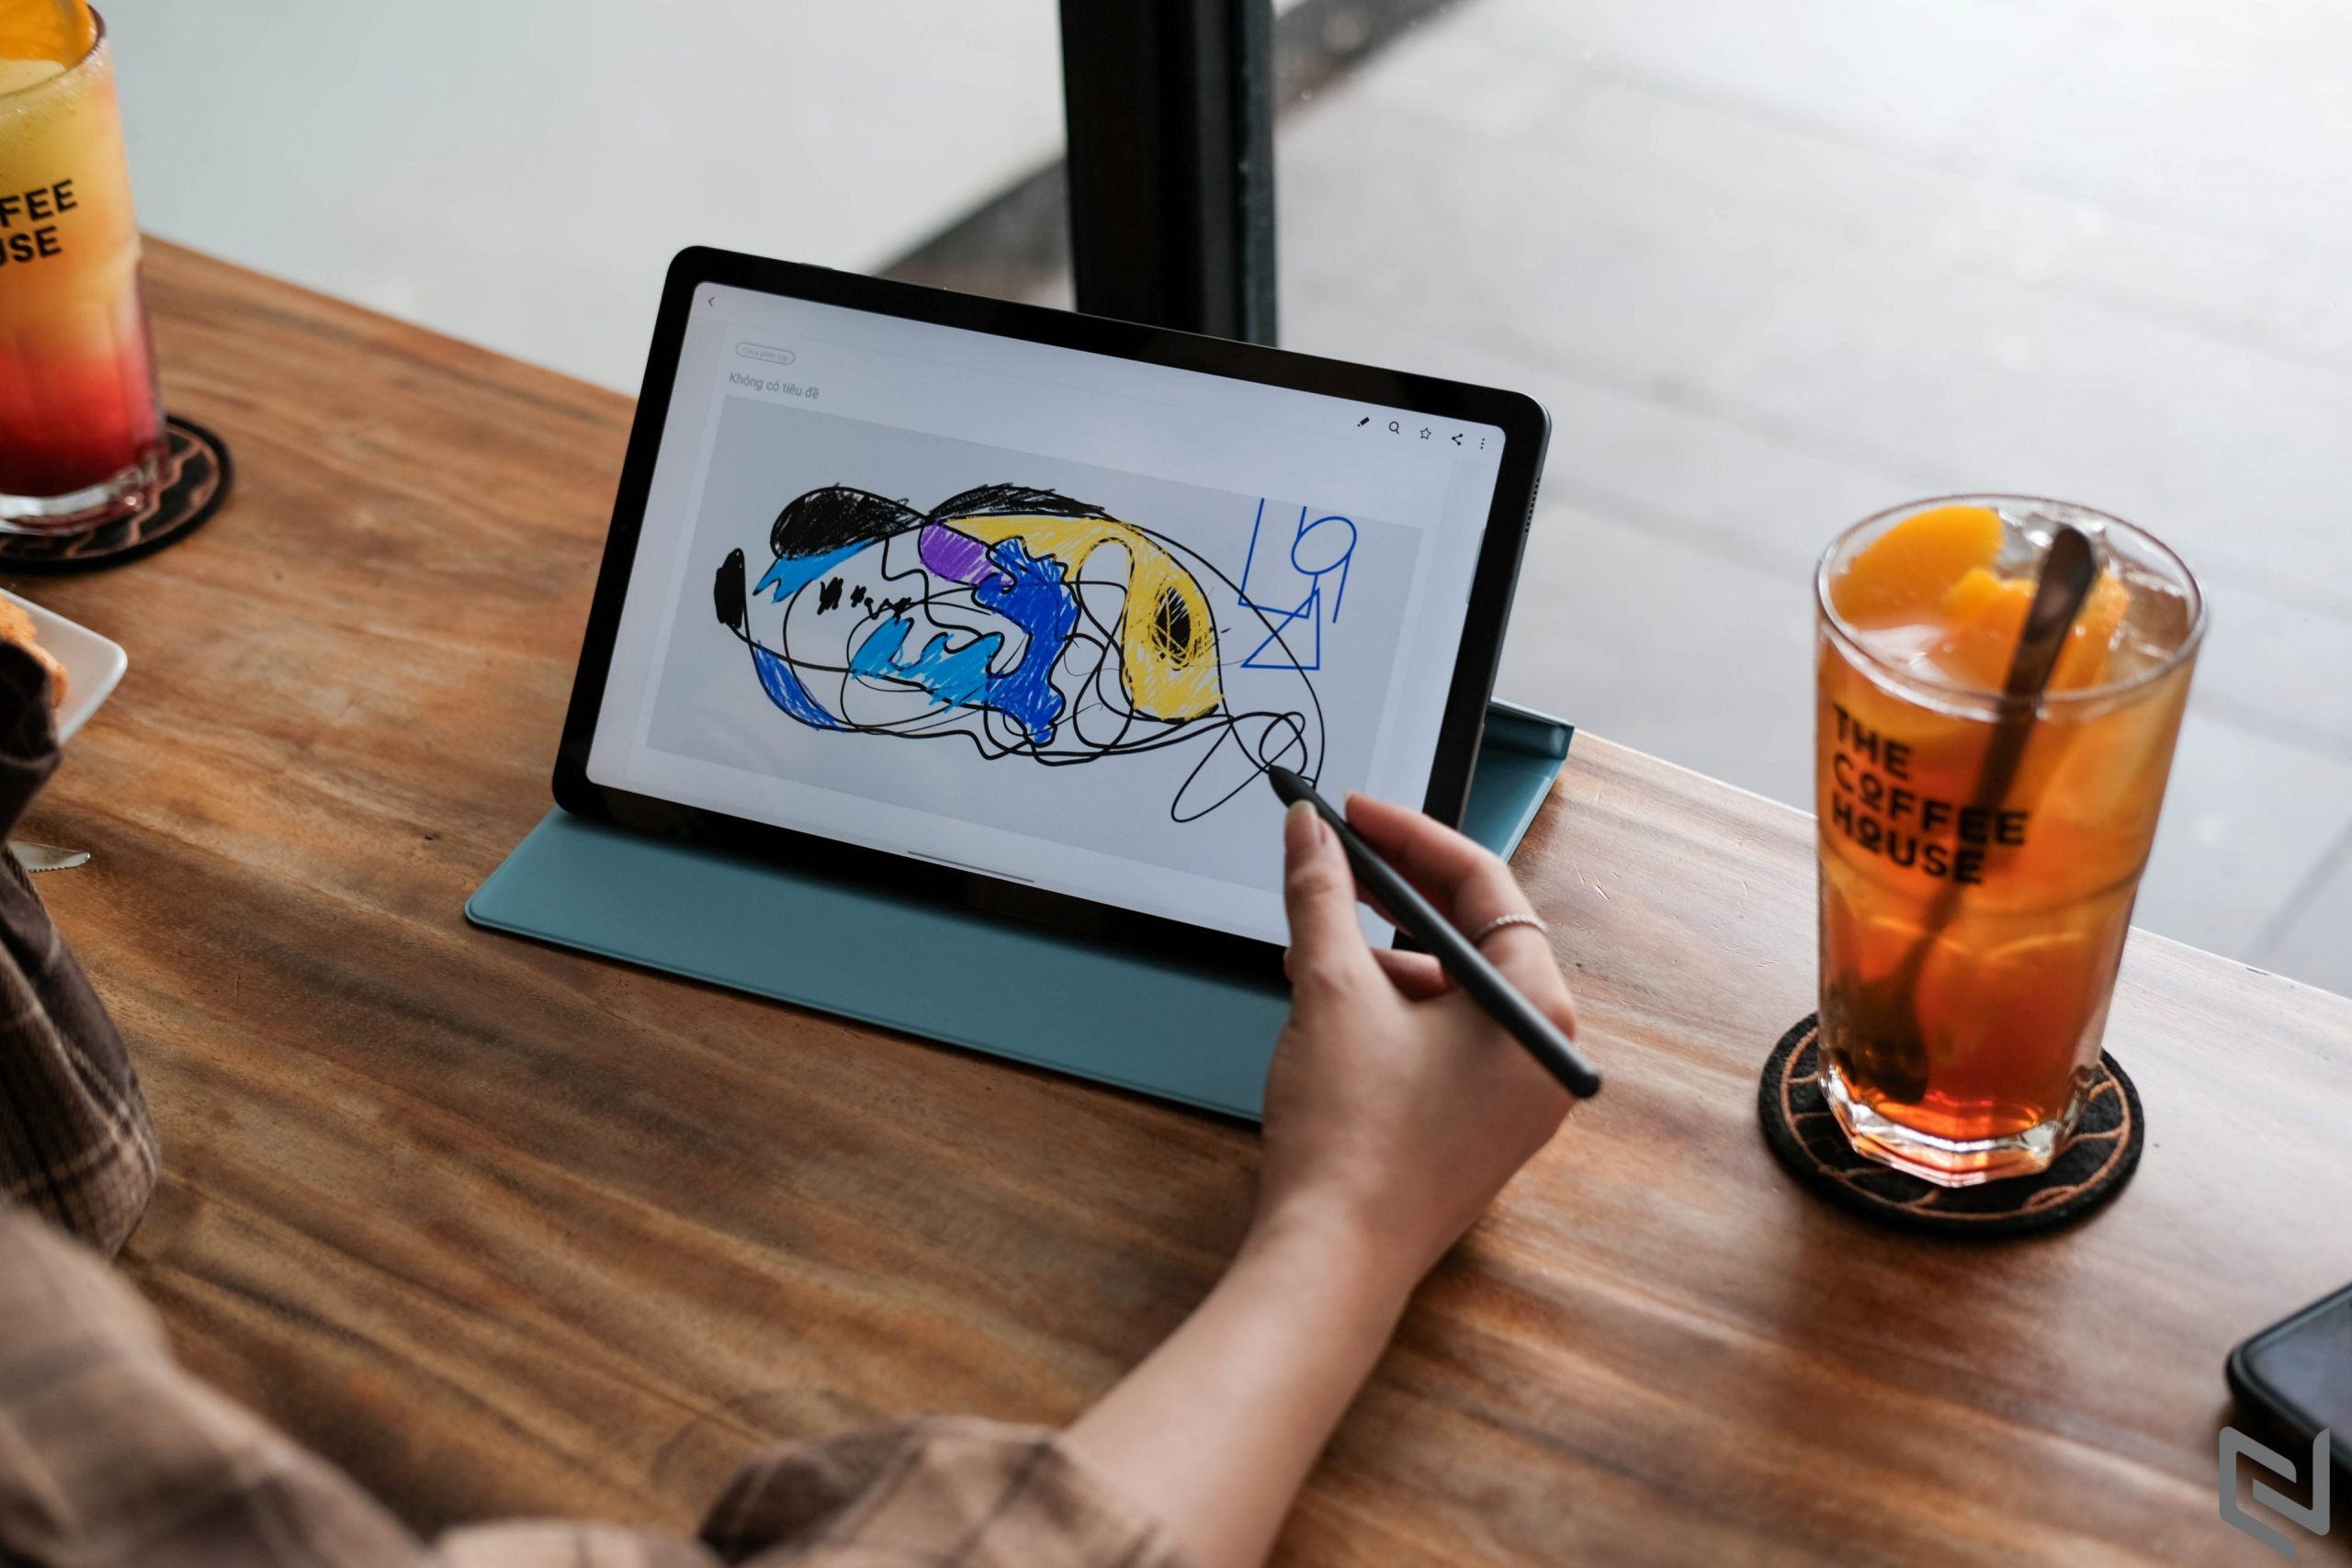 Trải nghiệm Galaxy Tab S6 Lite: Màn hình là điểm nhấn, bút S Pen đem đến trải nghiệm khác biệt